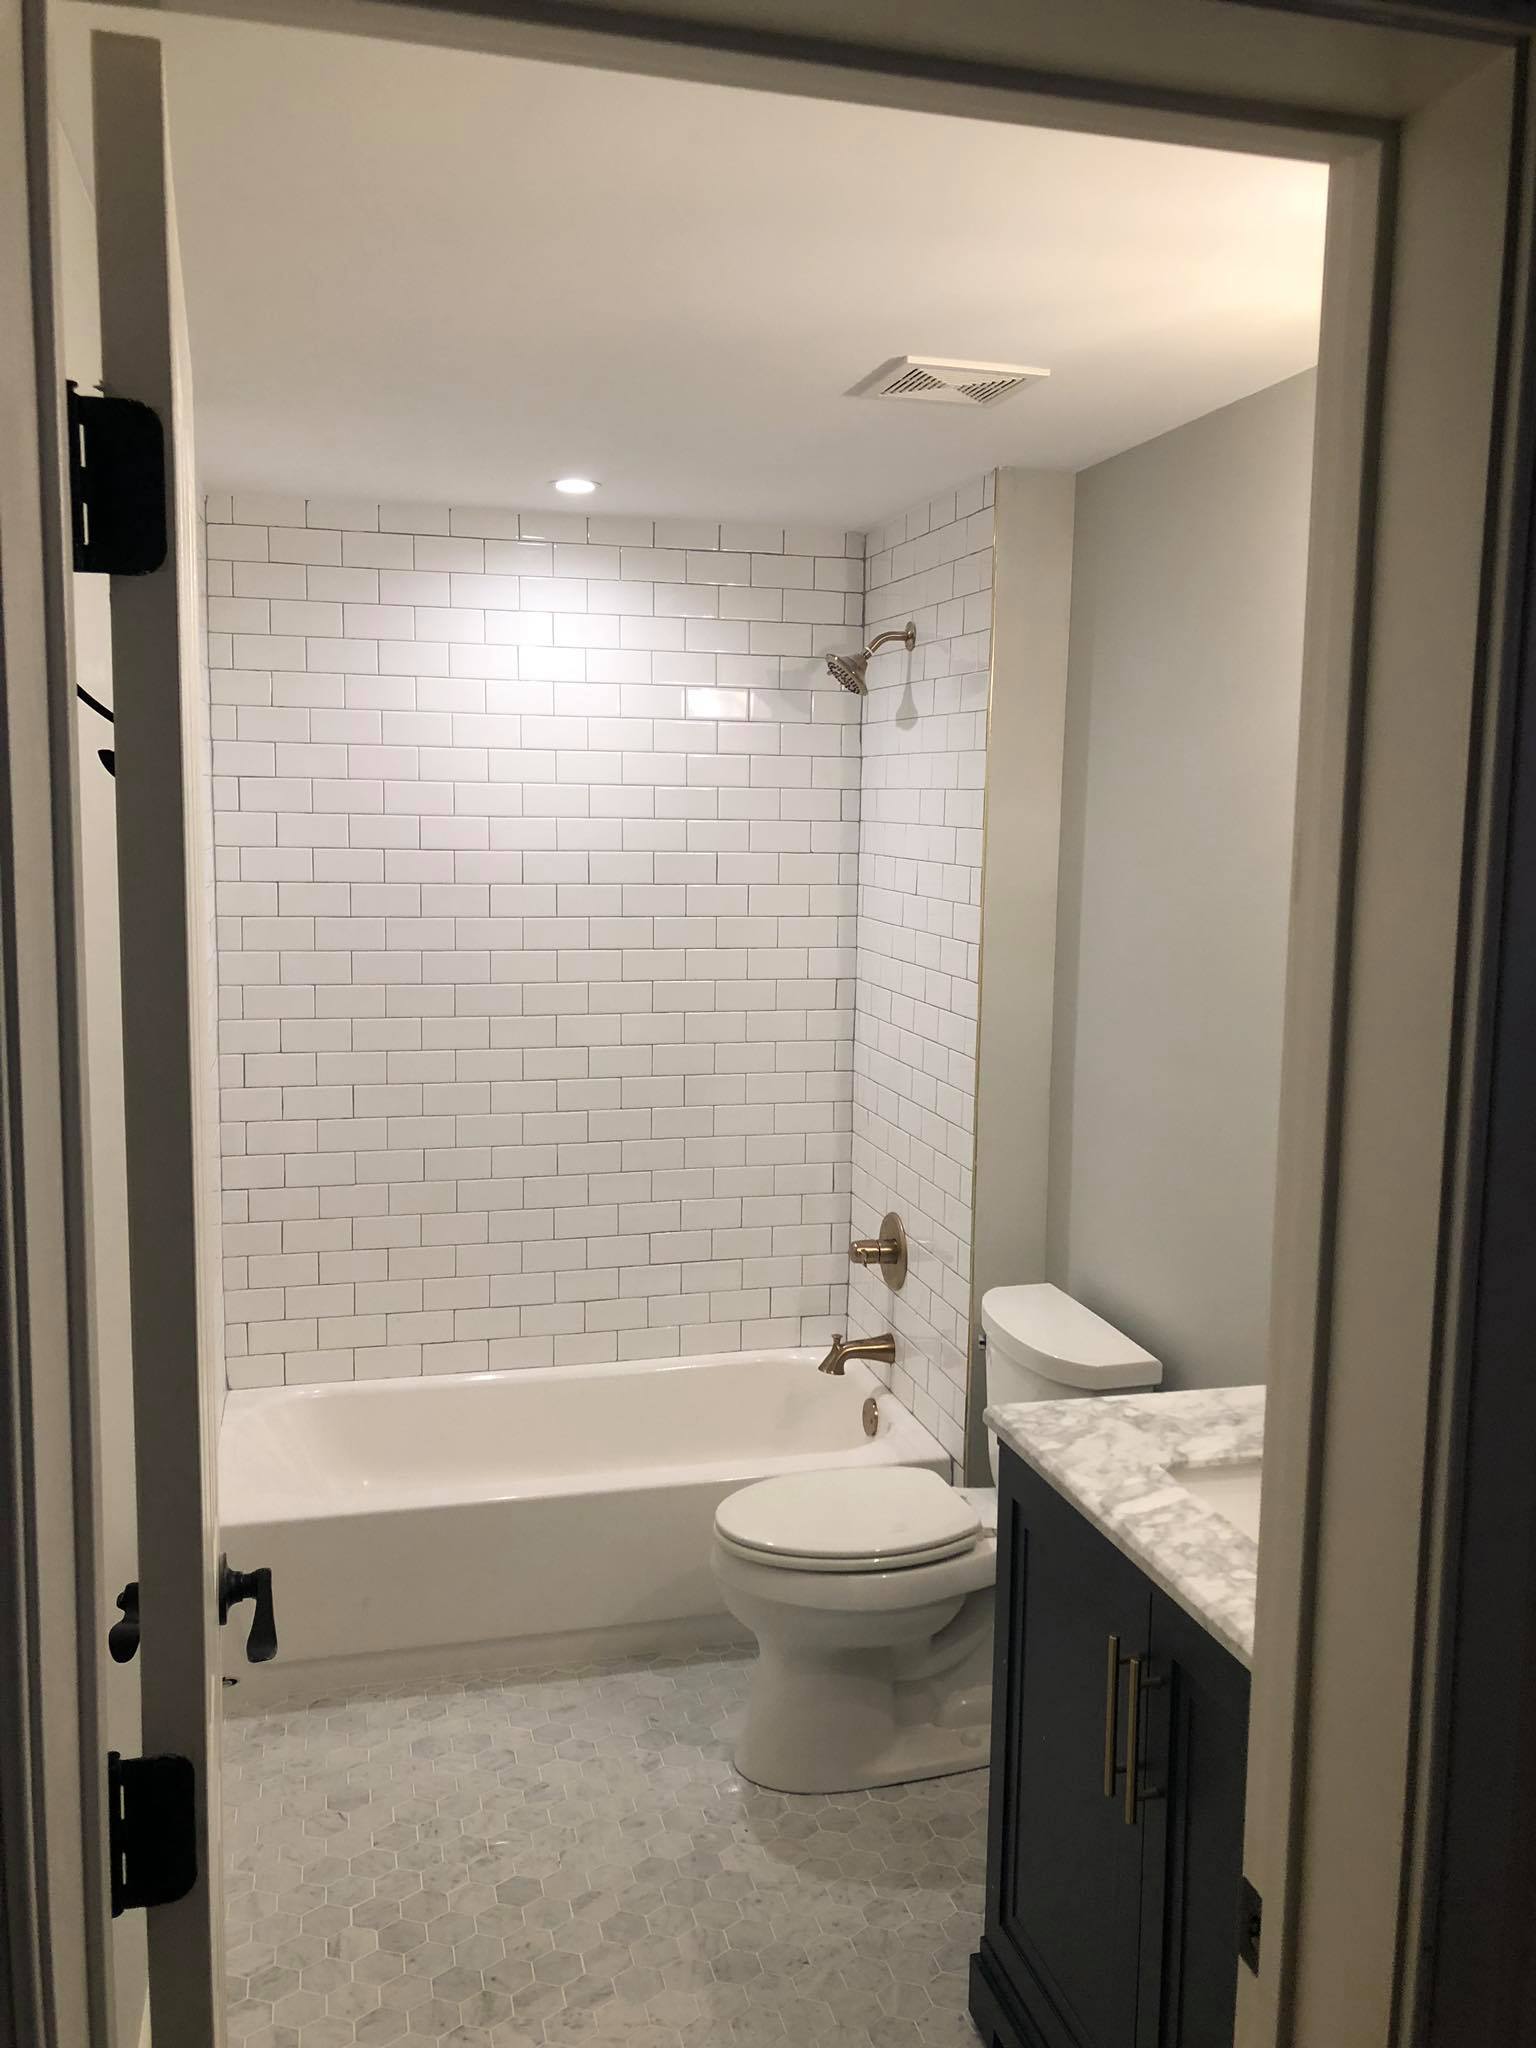 Bathroom Remodel with New Tiles and Double Door Vanity Far View